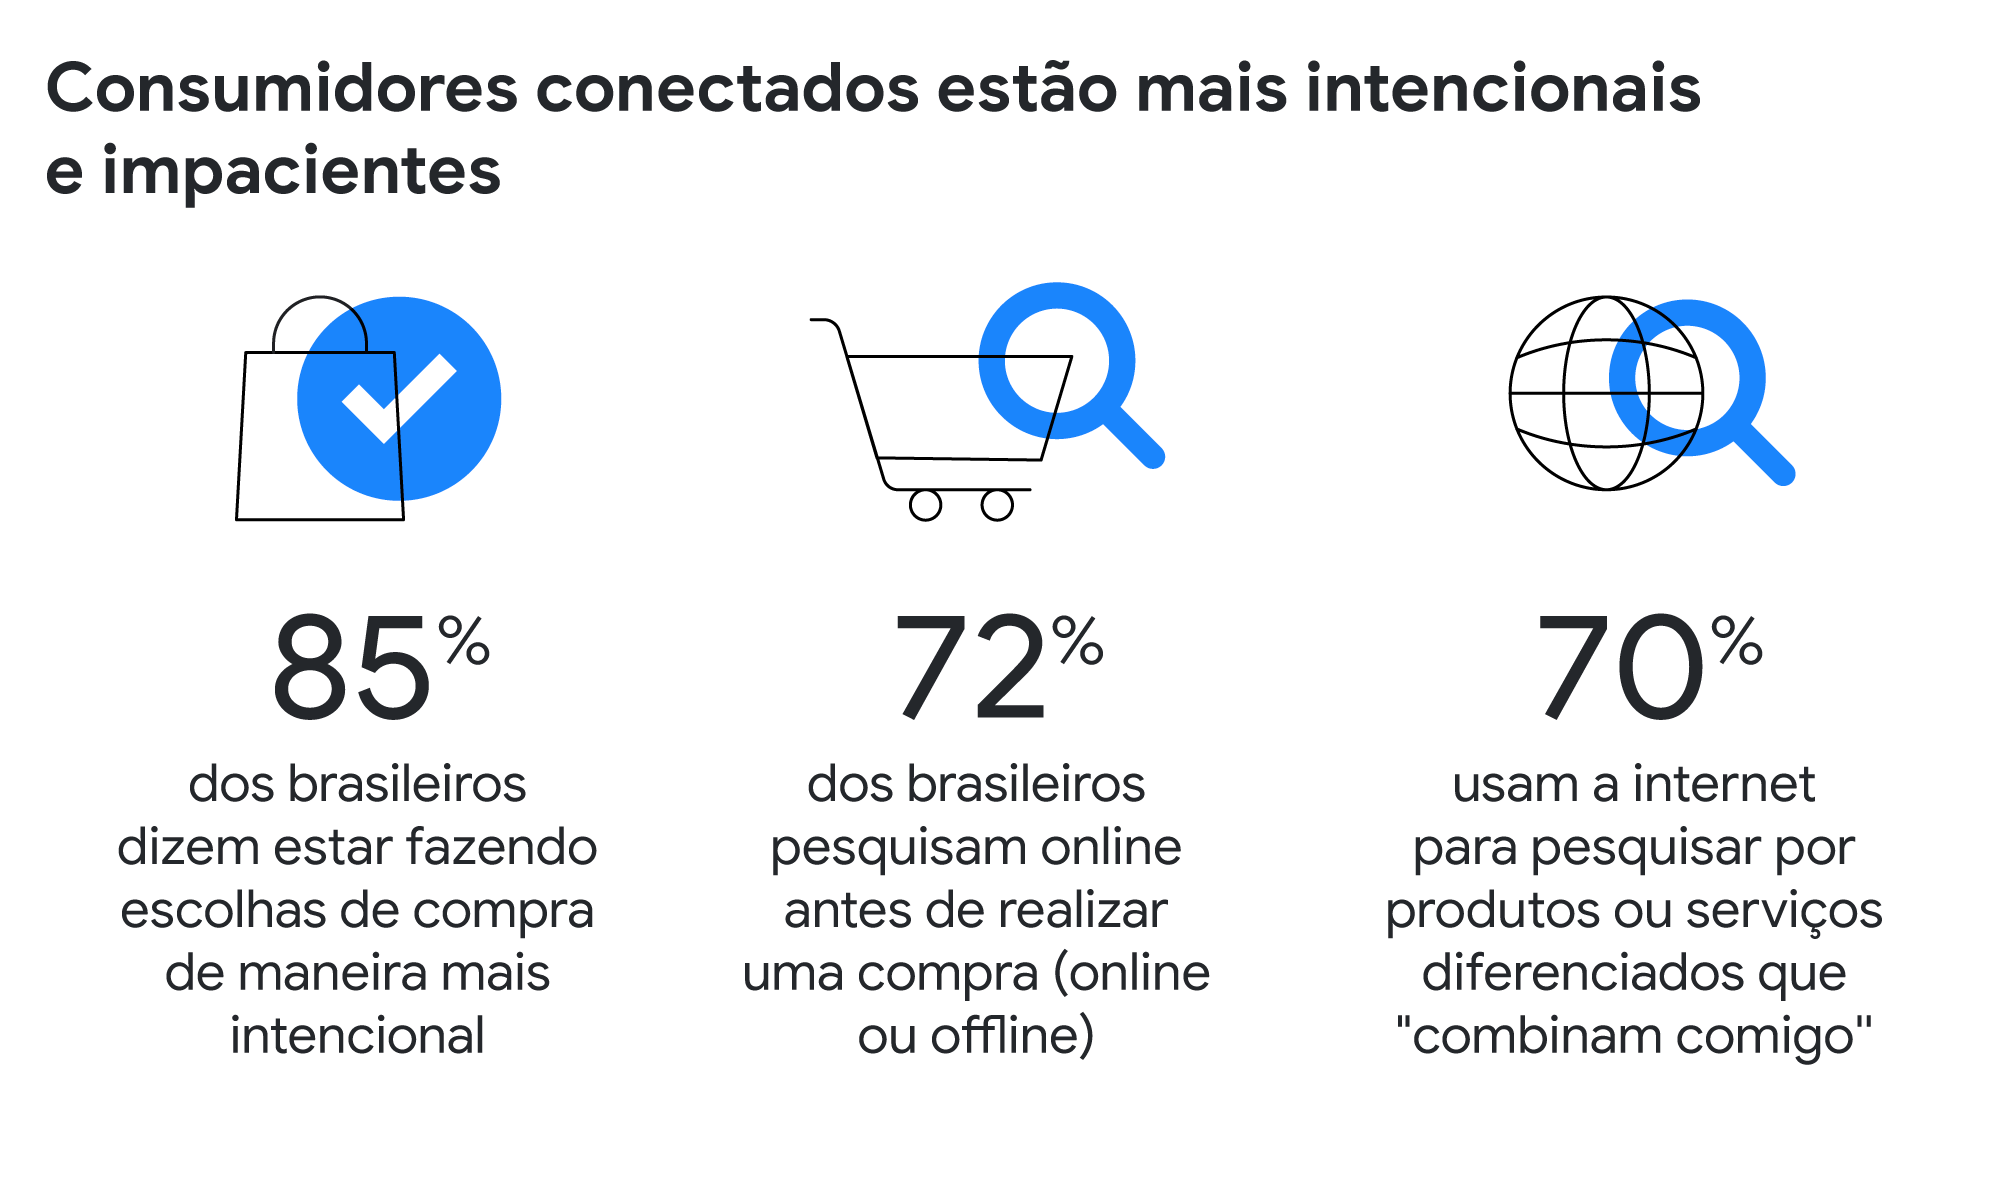 85% dos brasileiros dizem estar fazendo escolhas de compra mais intencionais, 72% pesquisam online antes de realizar uma compra (online ou offline), 70% usam a internet para pesquisar por produtos ou serviços diferenciados que "combinam comigo''.